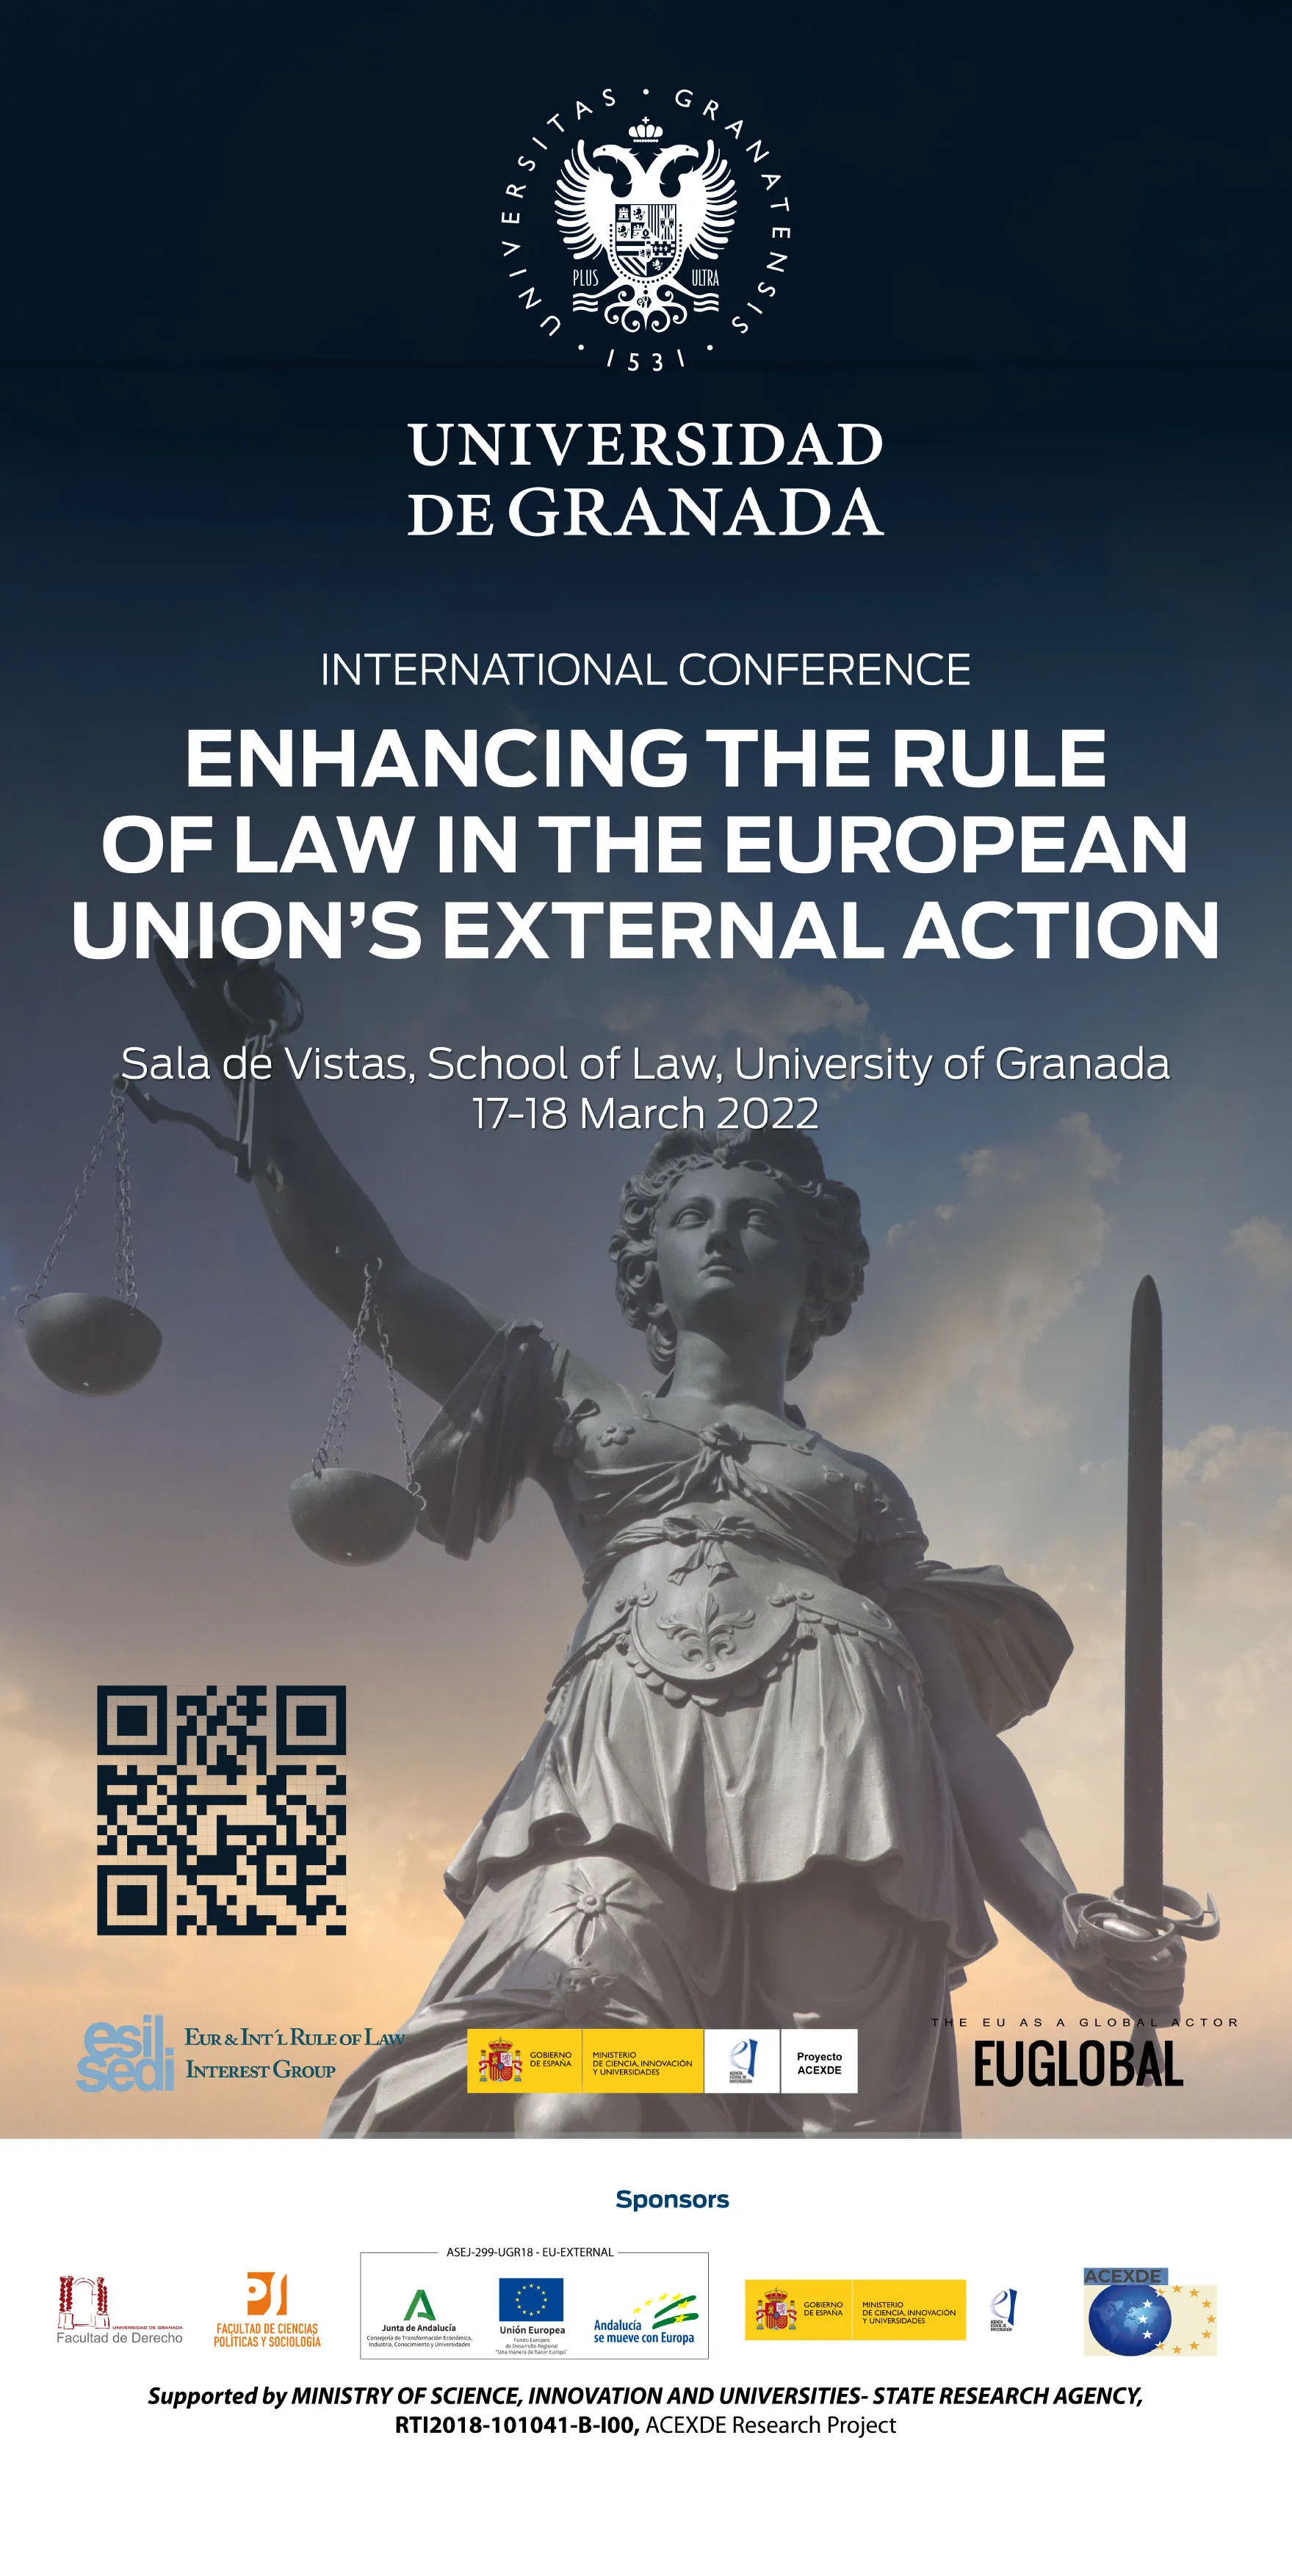 Ponentes de 25 universidades o instituciones europeas participan en el Congreso Internacional Enhancing the Rule of Law in the EU’s External Action en la Facultad de Derecho